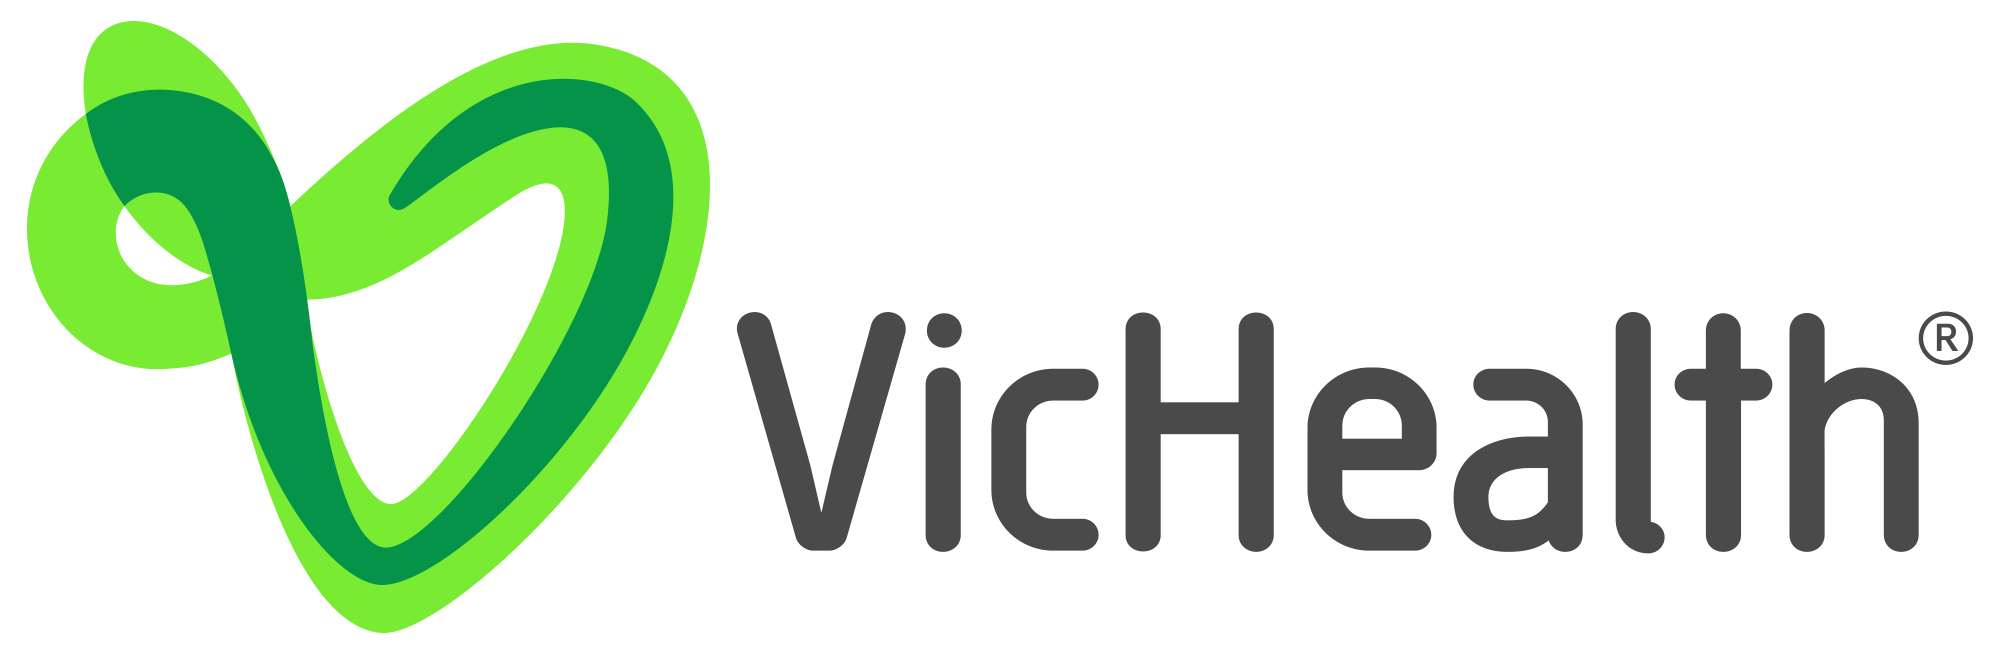 VicHealth ayuda a las mujeres de Vic a estar activas y a conectarse socialmente